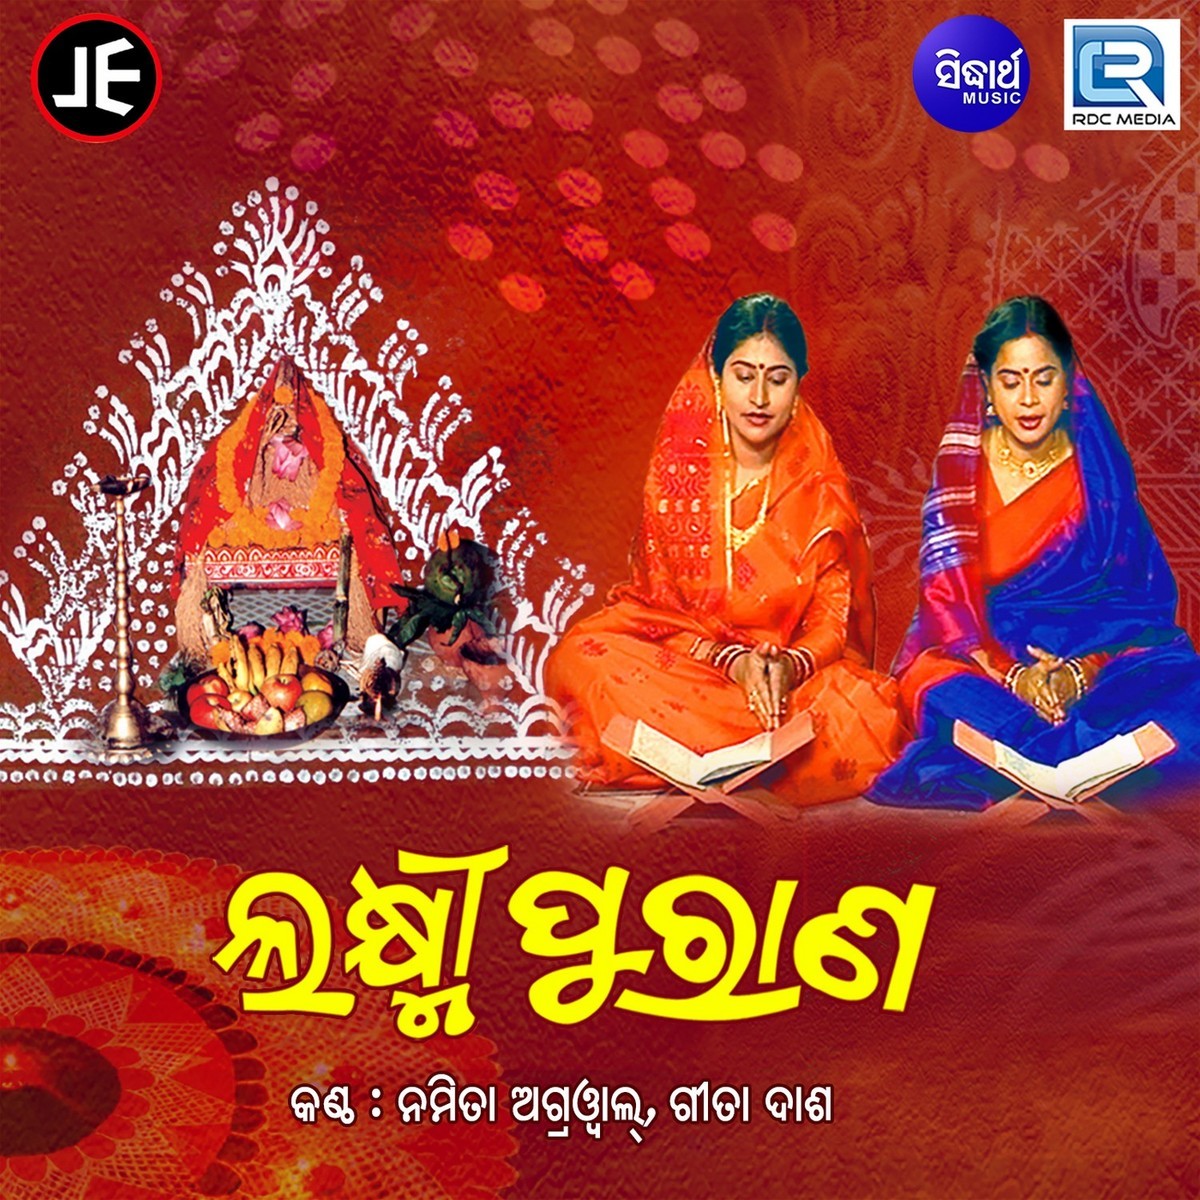 Laxmi Purana Songs Download Laxmi Purana Mp3 Odia Songs Online Free On Gaana Com